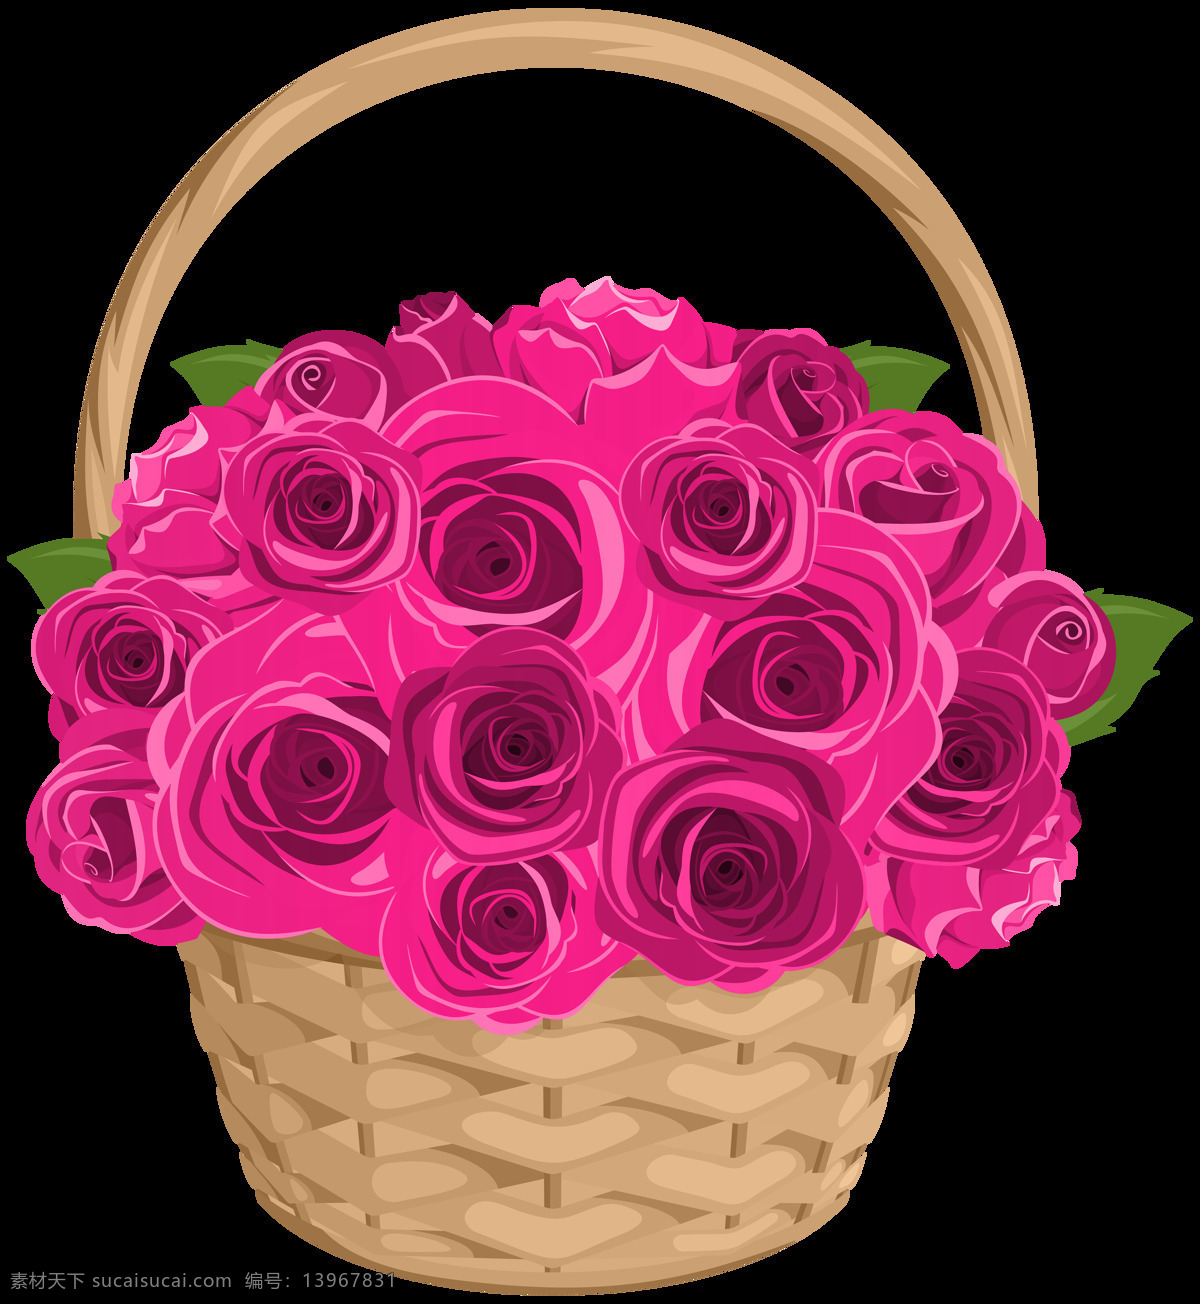 美丽 清新 彩色 玫瑰花 装饰 元素 花束 红色玫瑰花 装饰元素 捧花 蝴蝶结